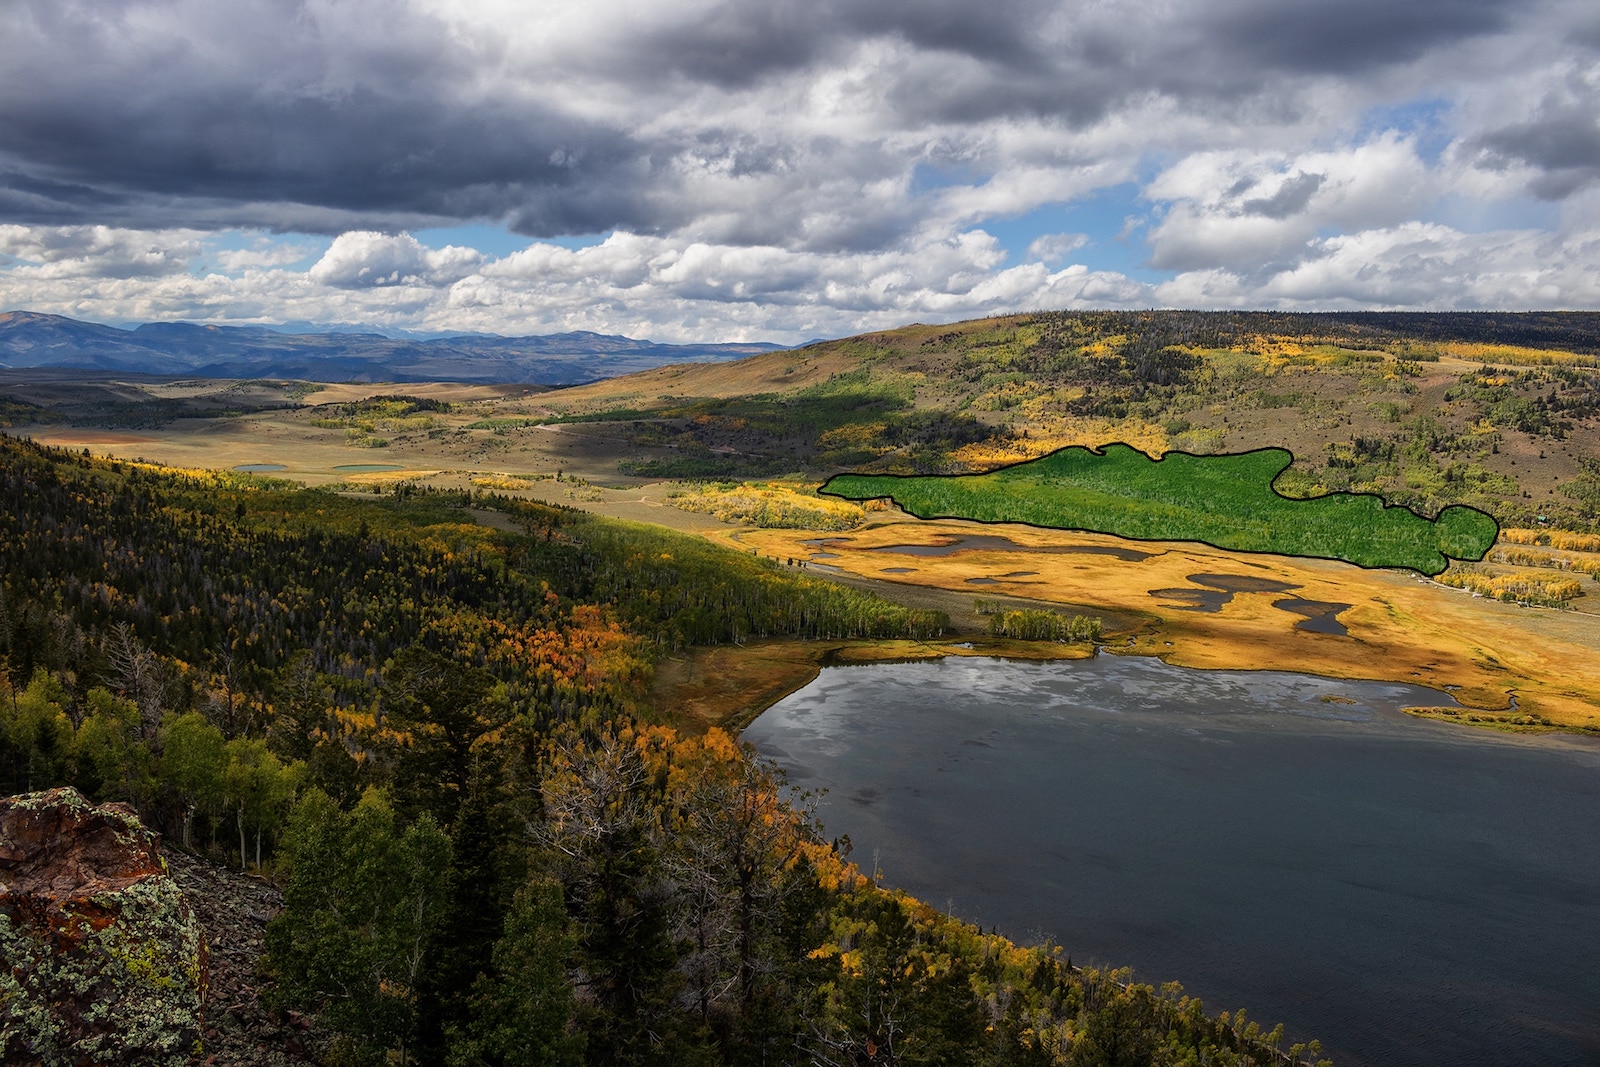 Légi felvétel egy gyönyörű, buja völgyre, tele fákkal, aranyló dombokkal és egy nagy tóval.  A jobb oldalon egy zölddel árnyékolt terület a Pando földtömeg